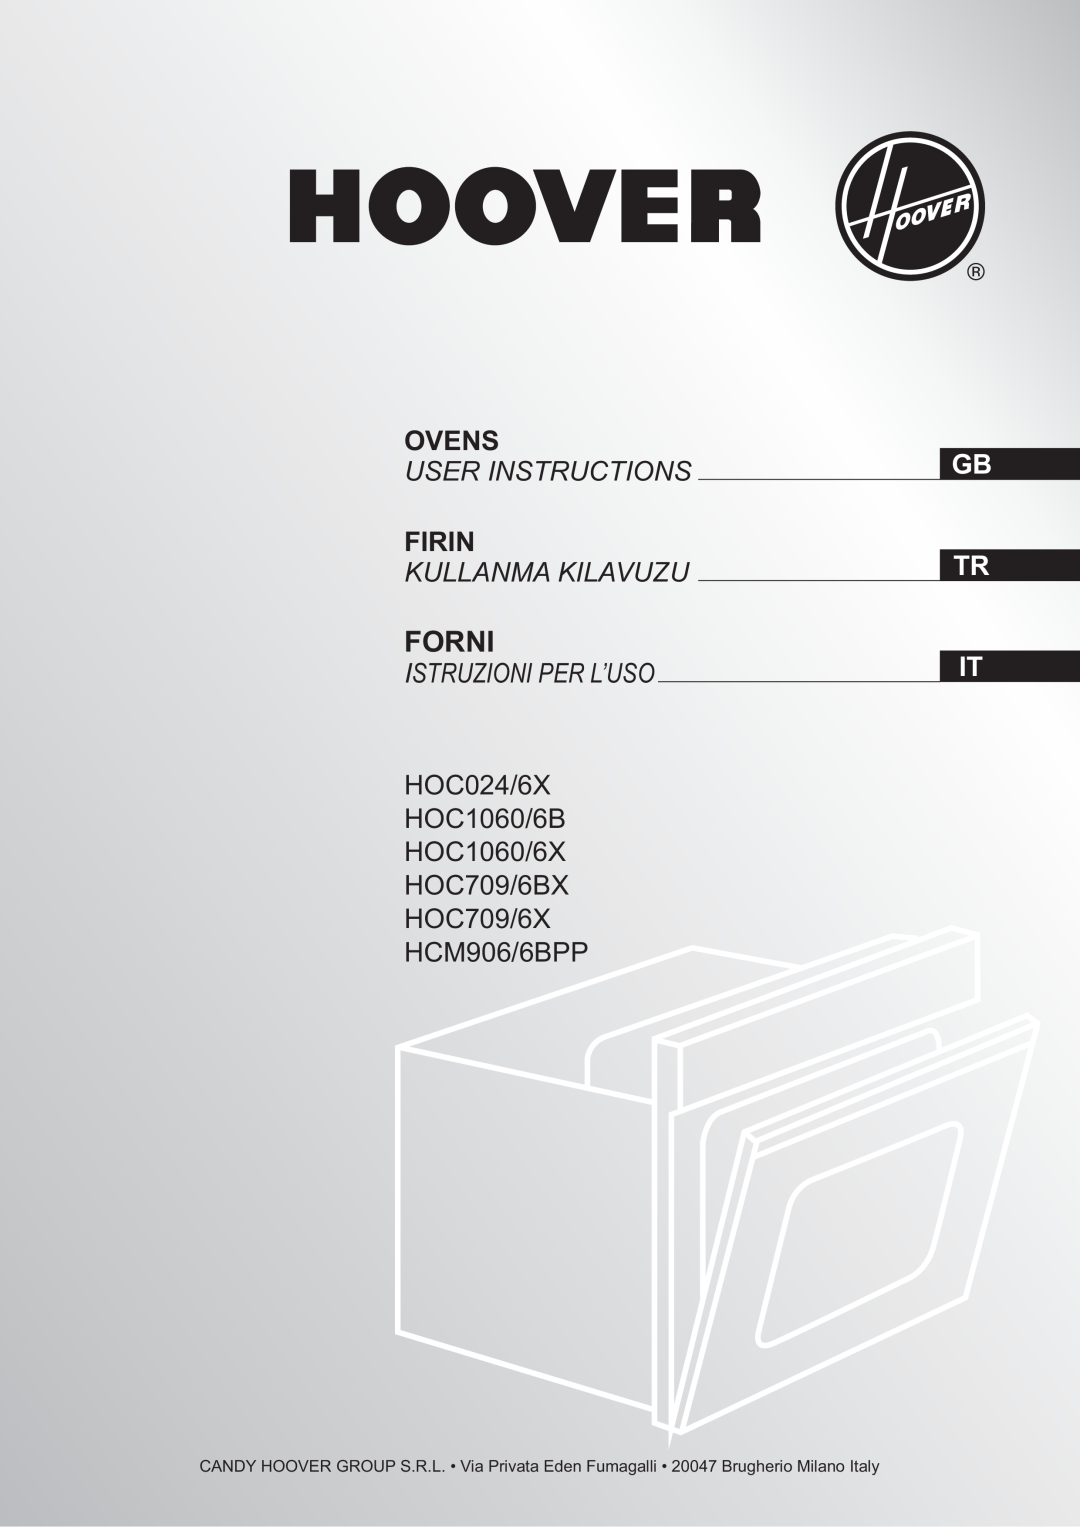 Hoover HOC024/6X manual Forni, Ovens, User Instructions, Firin, Kullanma Kilavuzu, Istruzioni Per L’Uso, Gb Tr It 